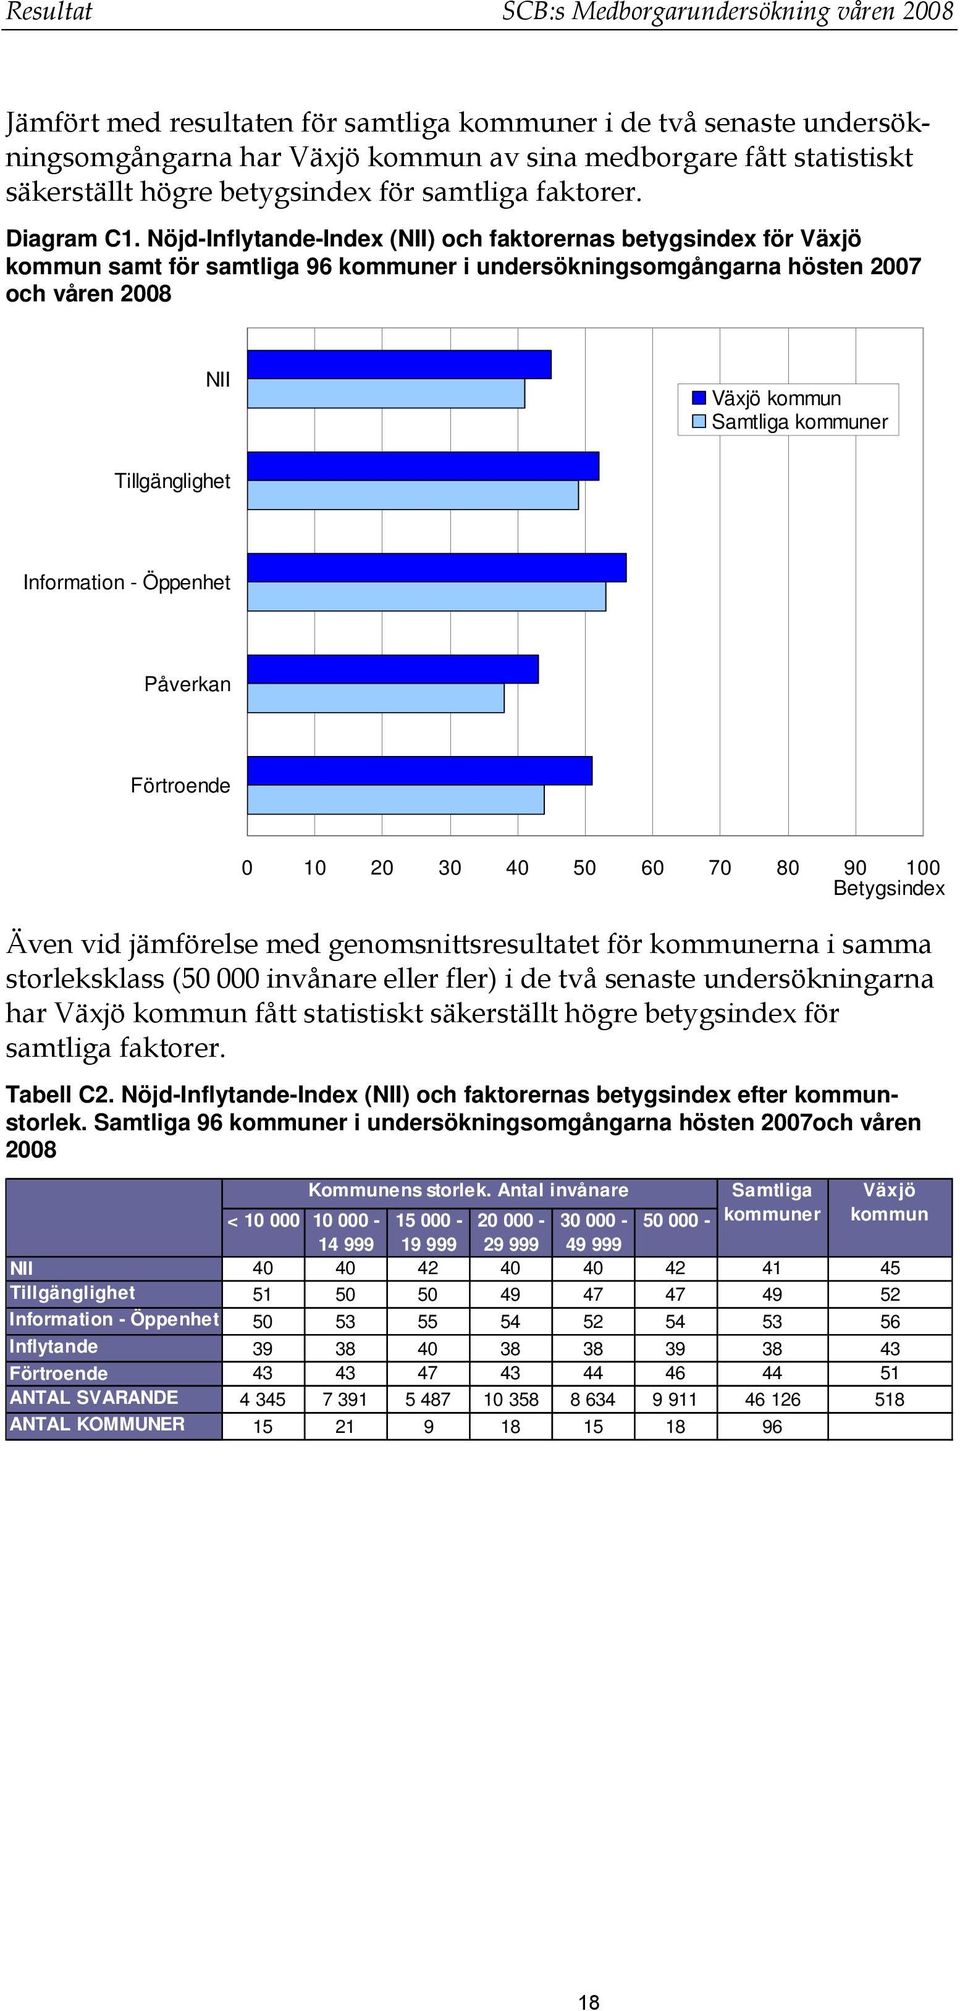 Nöjd-Inflytande-Index (NII) och faktorernas betygsindex för Växjö kommun samt för samtliga 96 kommuner i undersökningsomgångarna hösten 2007 och våren 2008 NII Växjö kommun Samtliga kommuner